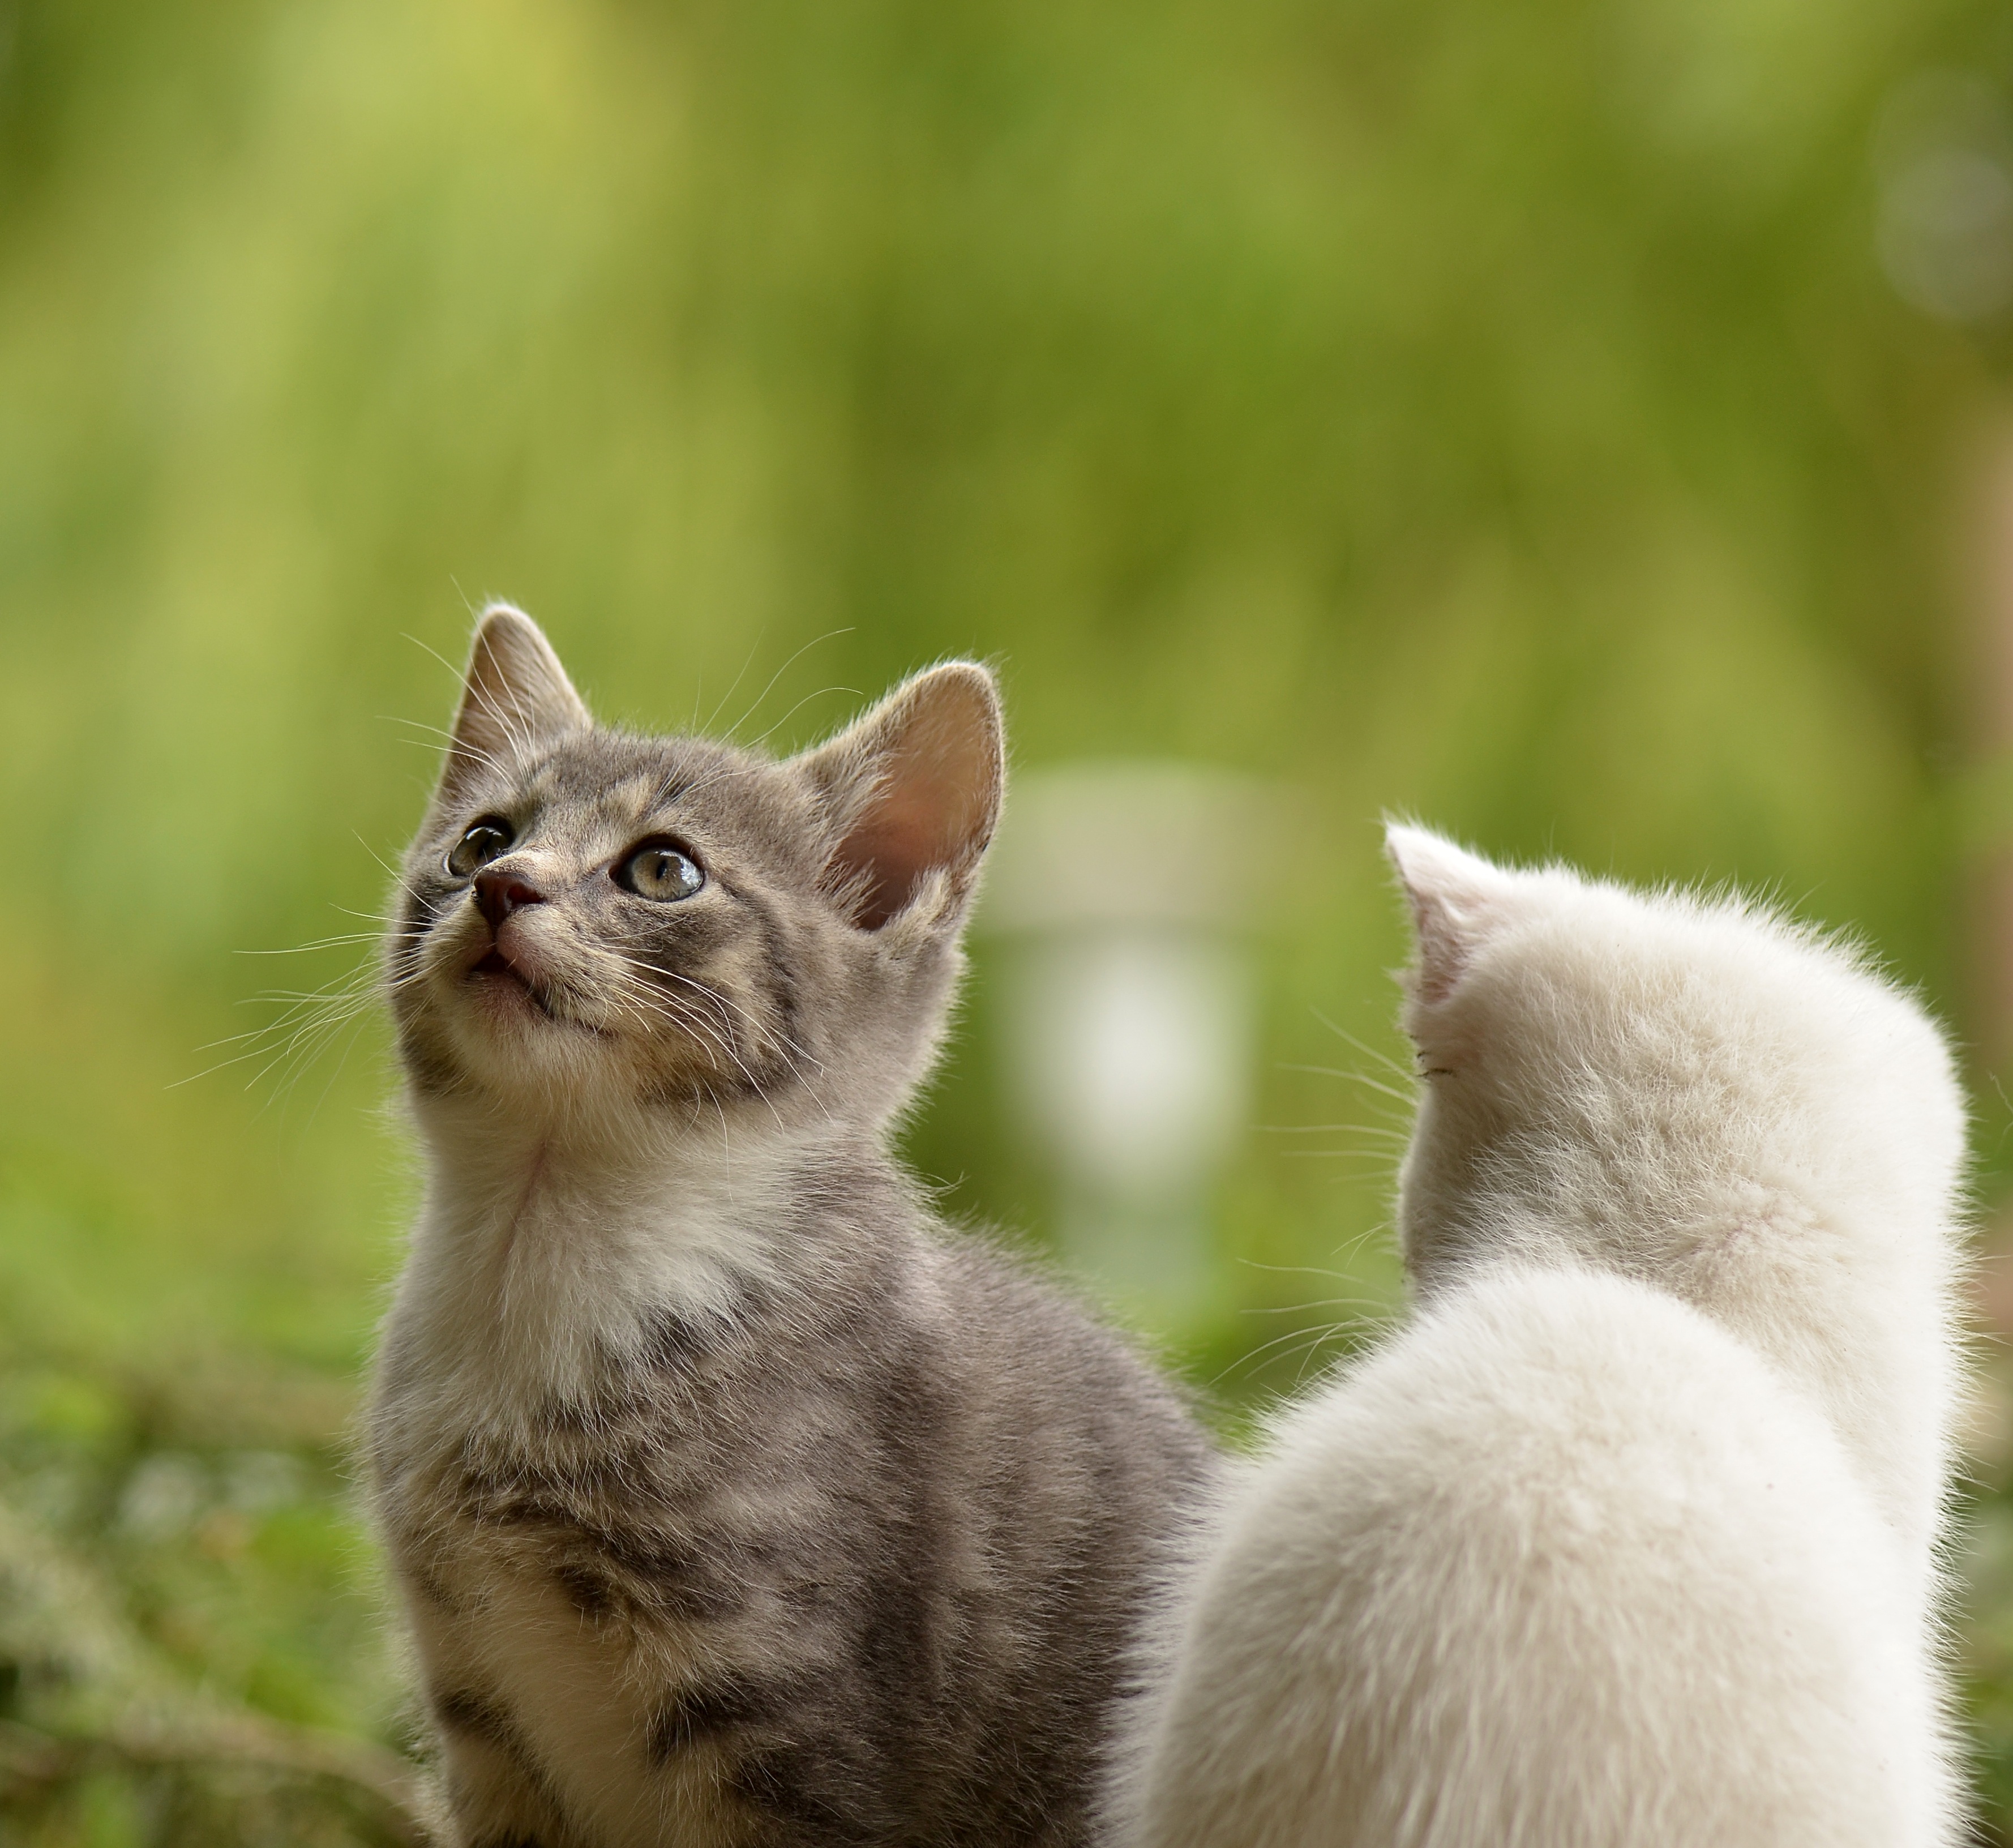 Tusindvis af dumpet – se dyreekspertens råd til ansvarlige katteejere | Plantorama